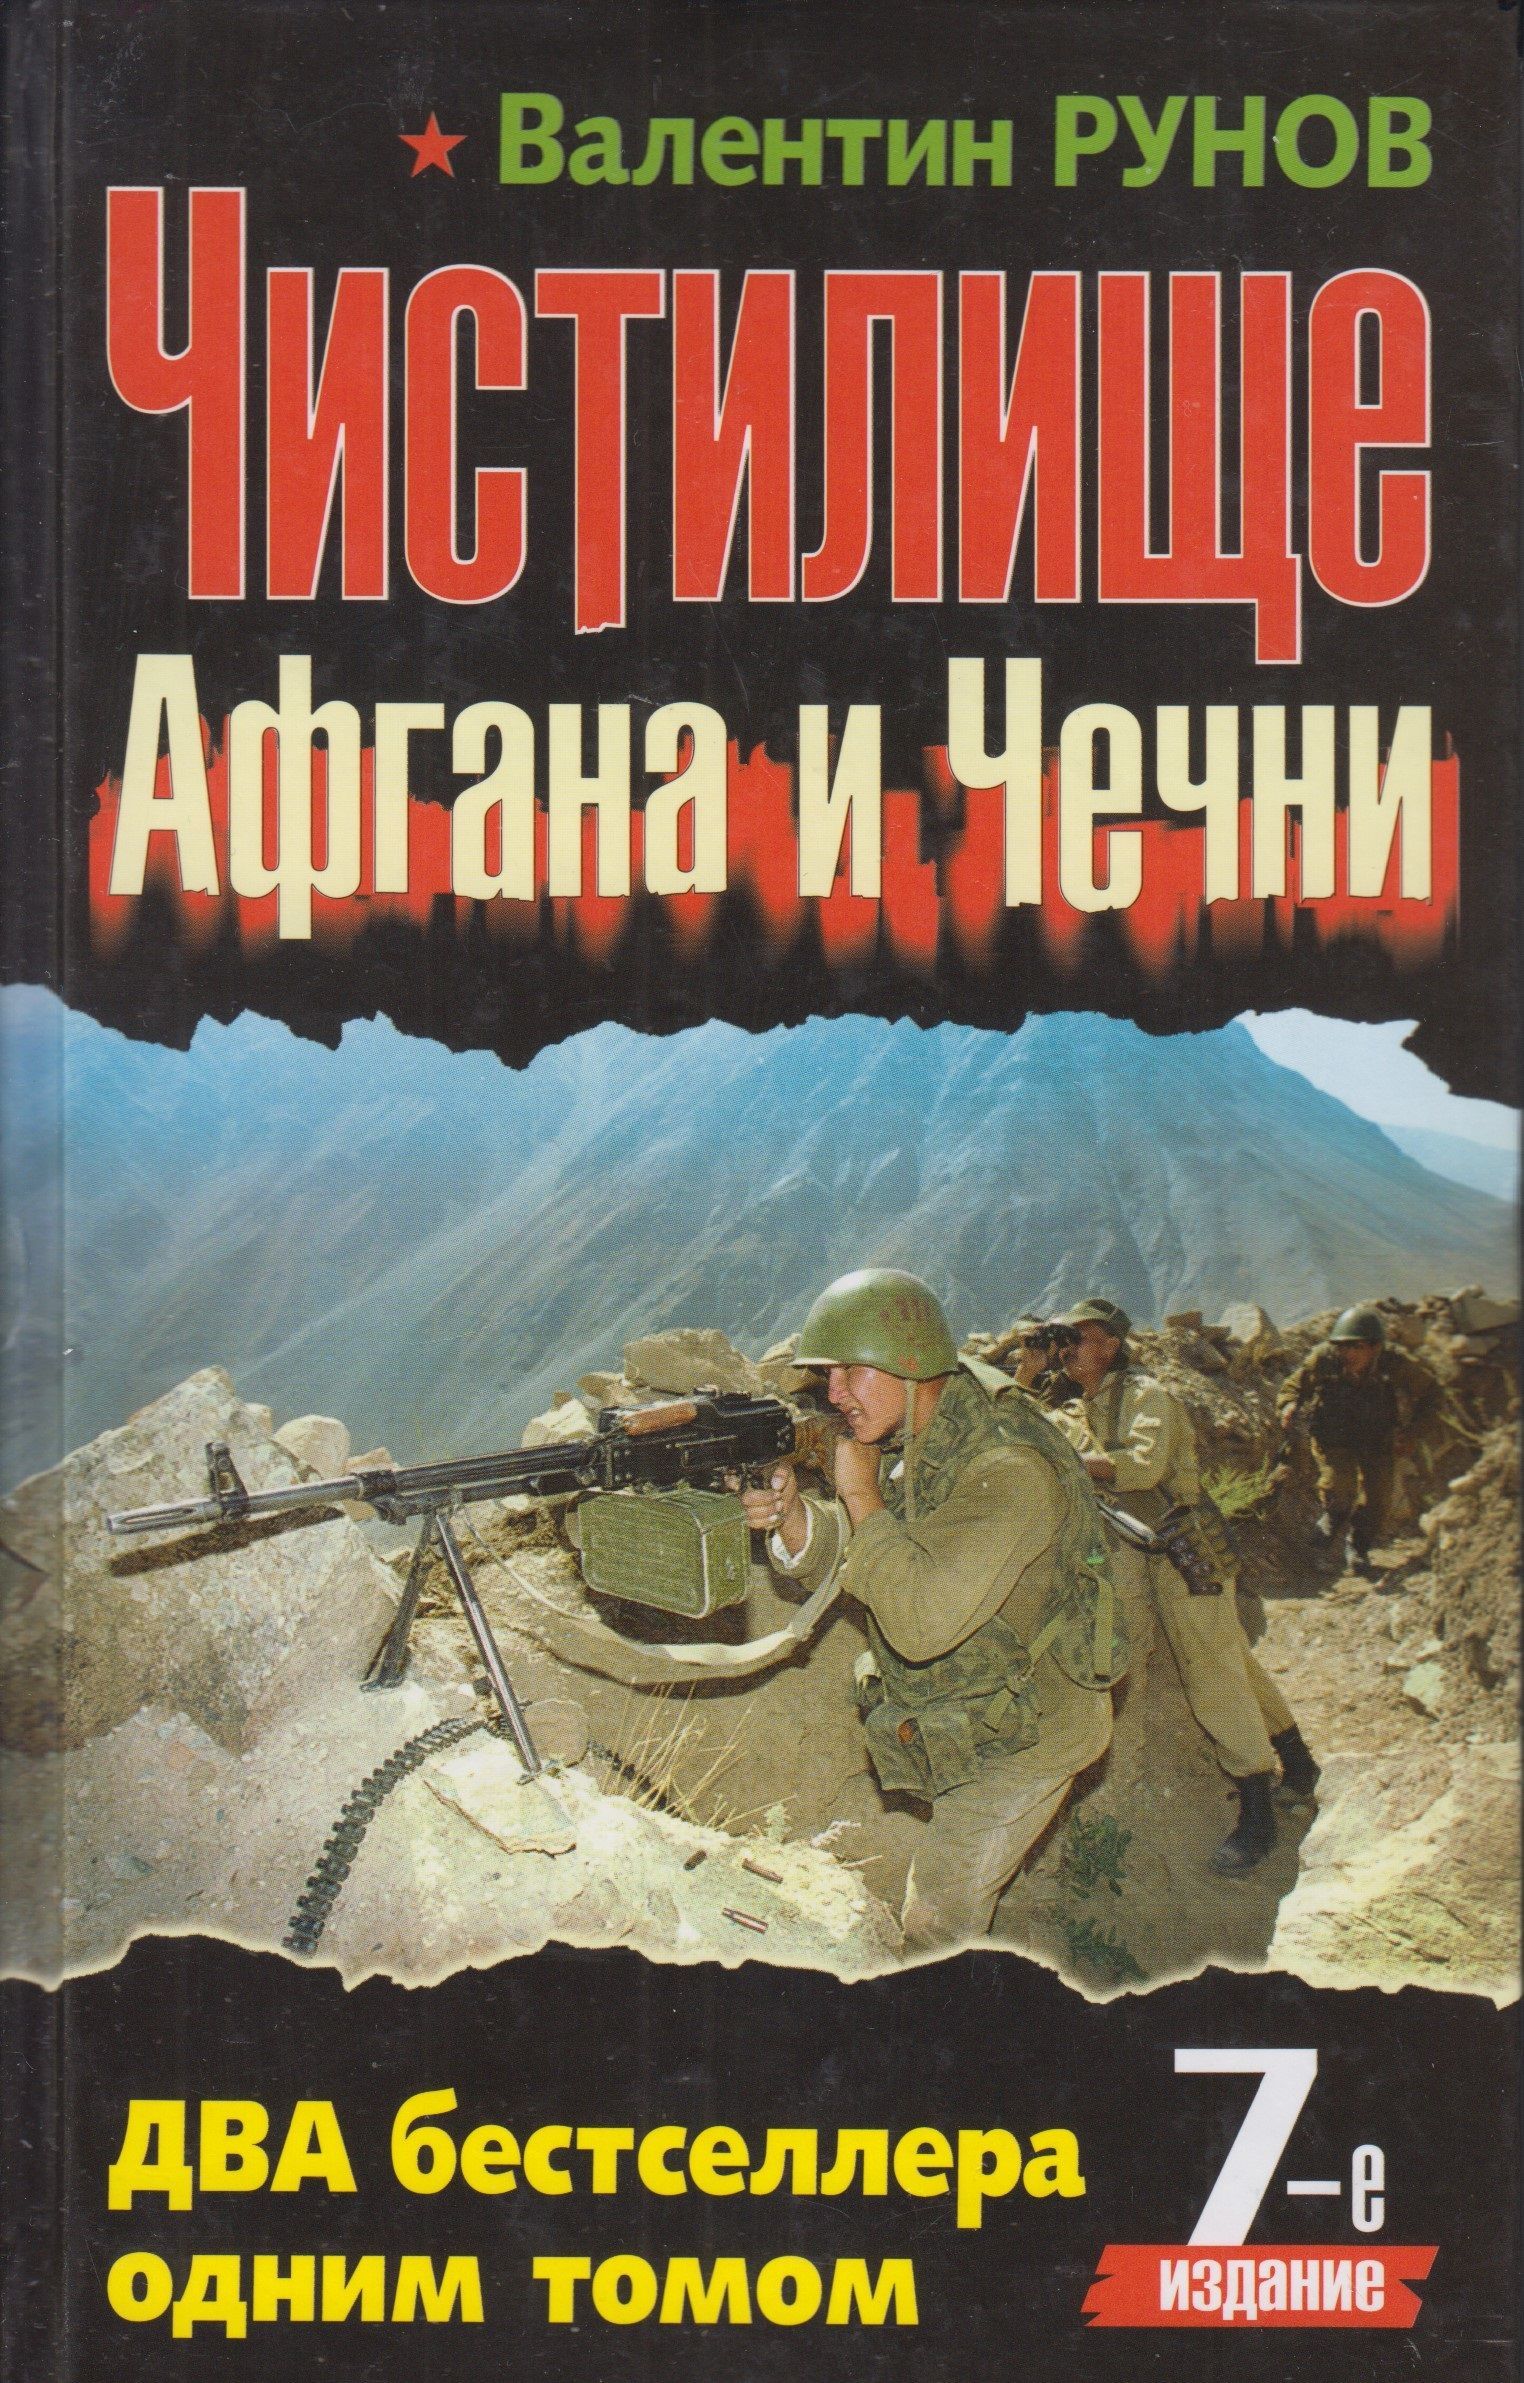 Книги про войну в чечне читать. Чистилище Афгана и Чечни книга. Книги о войне в Чечне.